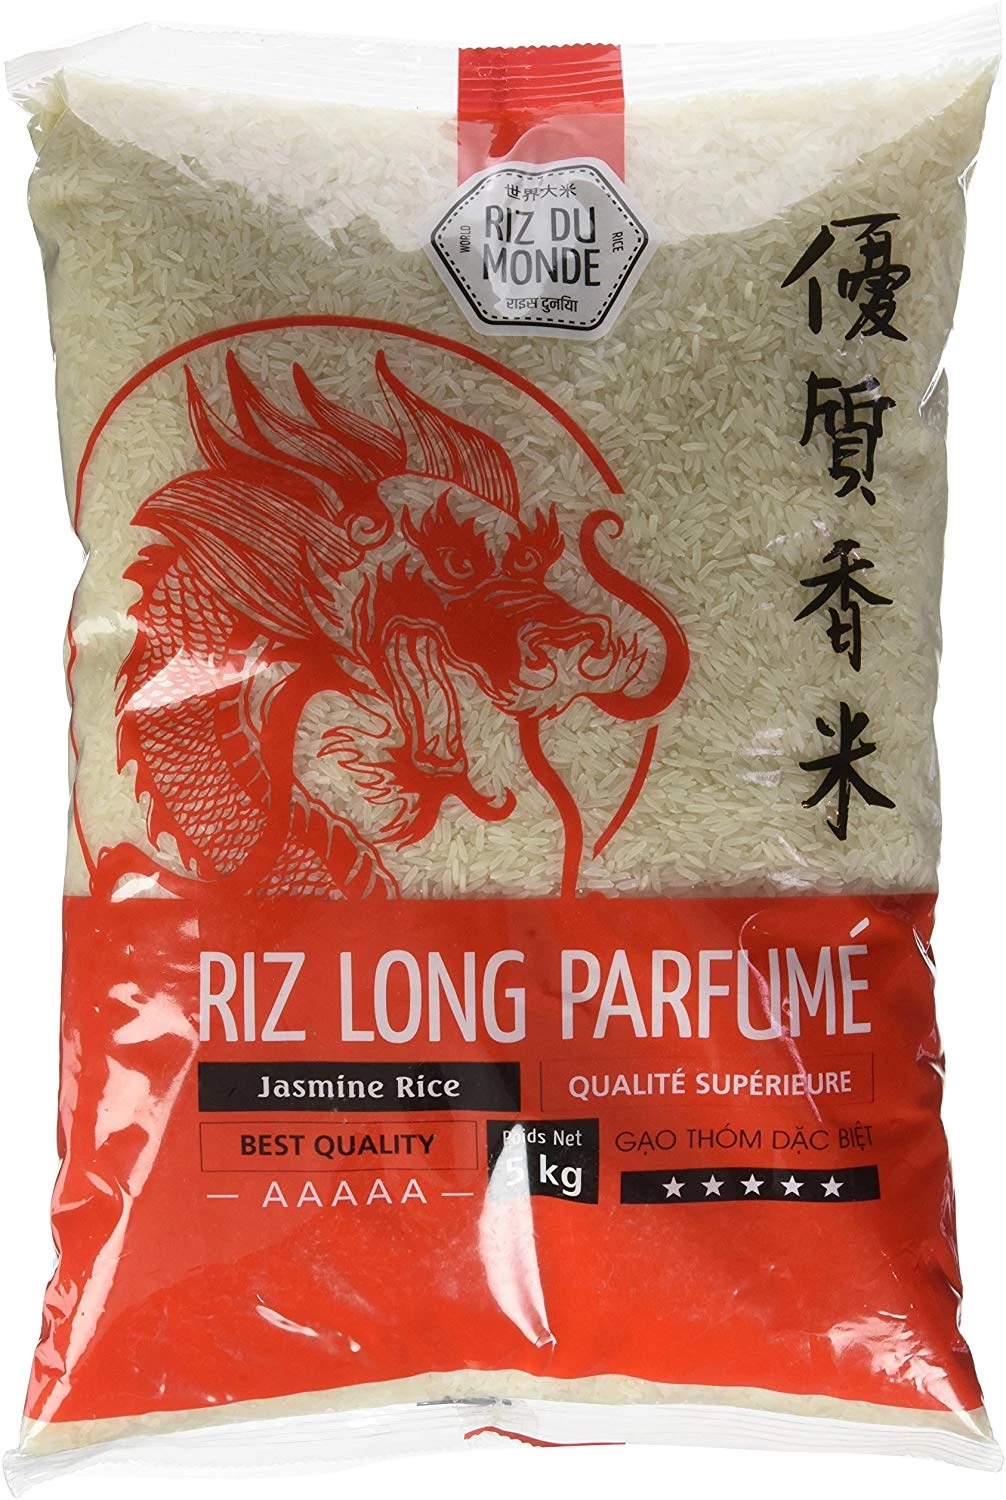 Riz long parfumé golden dragon 5kg - RIZ DU MONDE